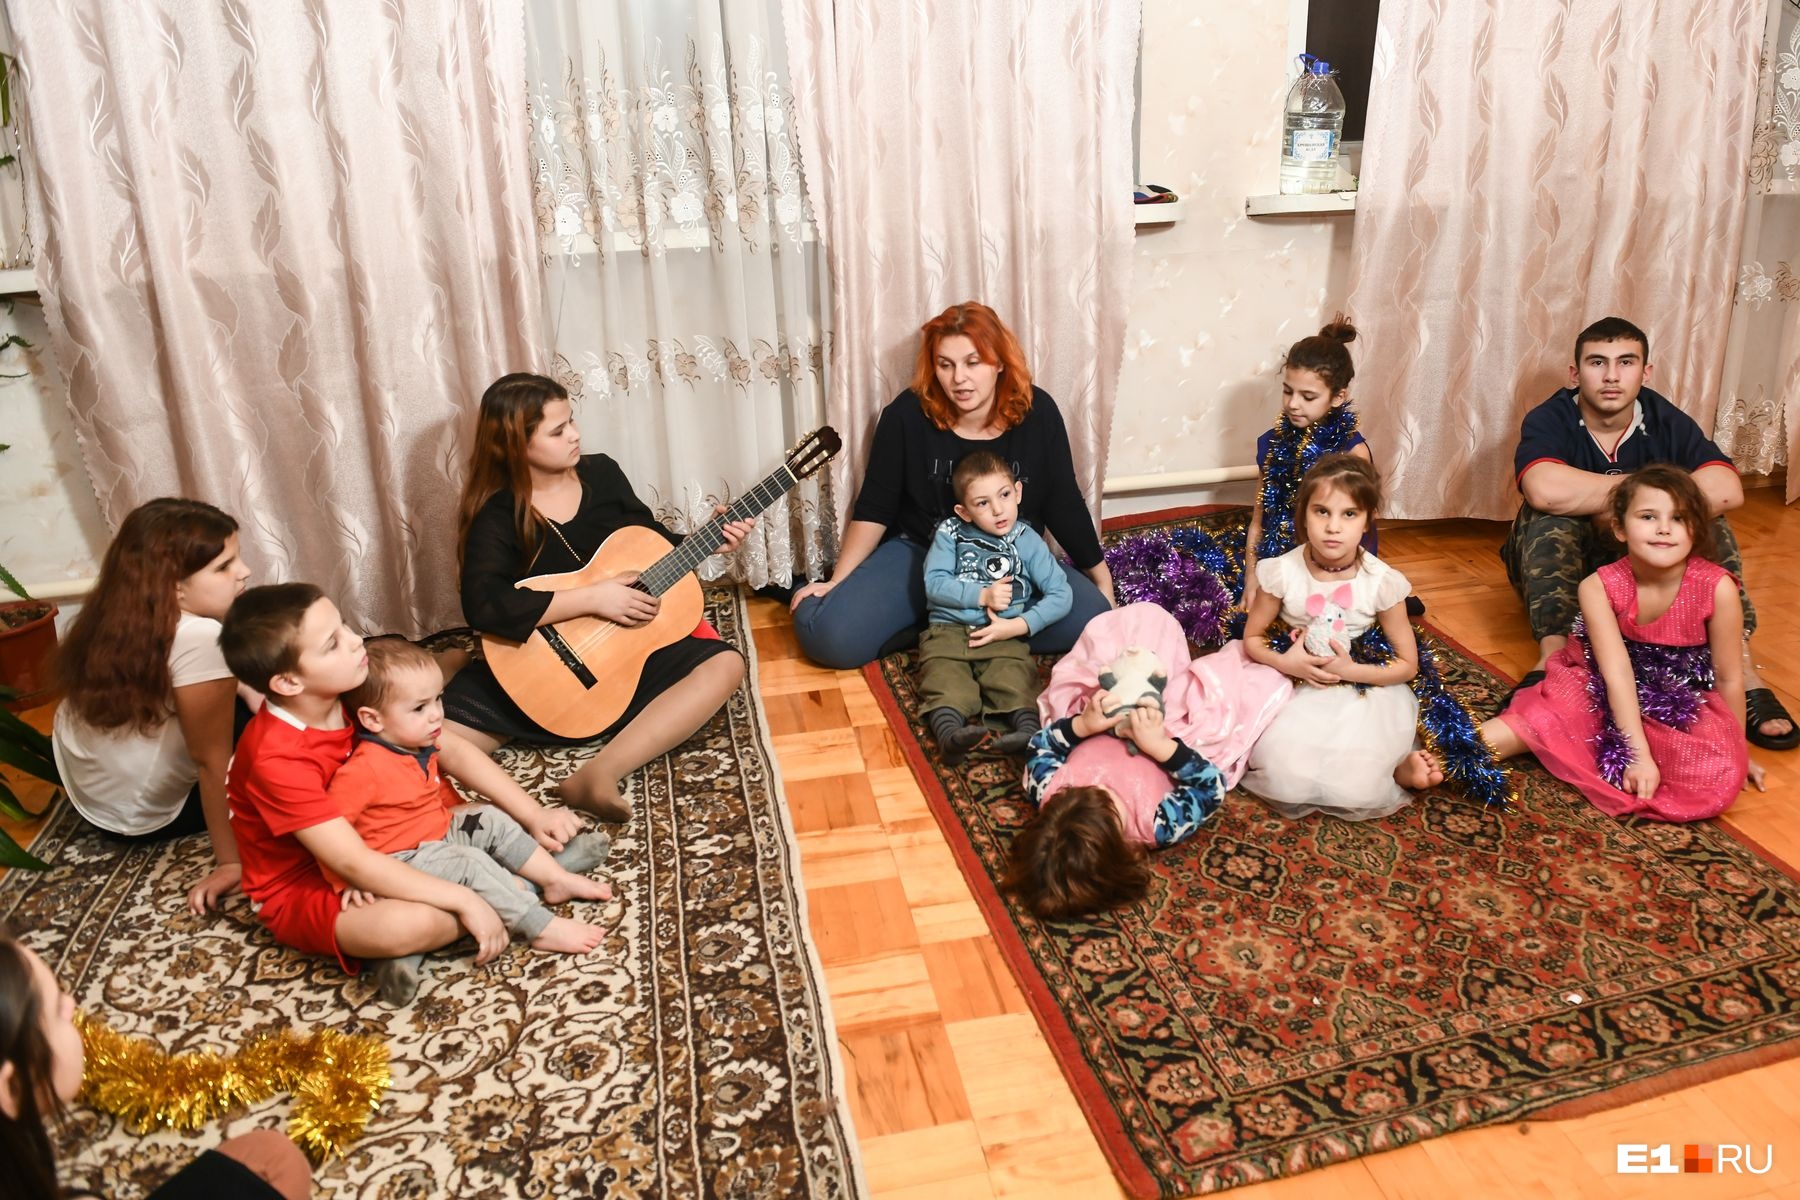 «Впервые поставили елку»: как встречает Новый год семья с 12 детьми, которой купил дом Алтушкин